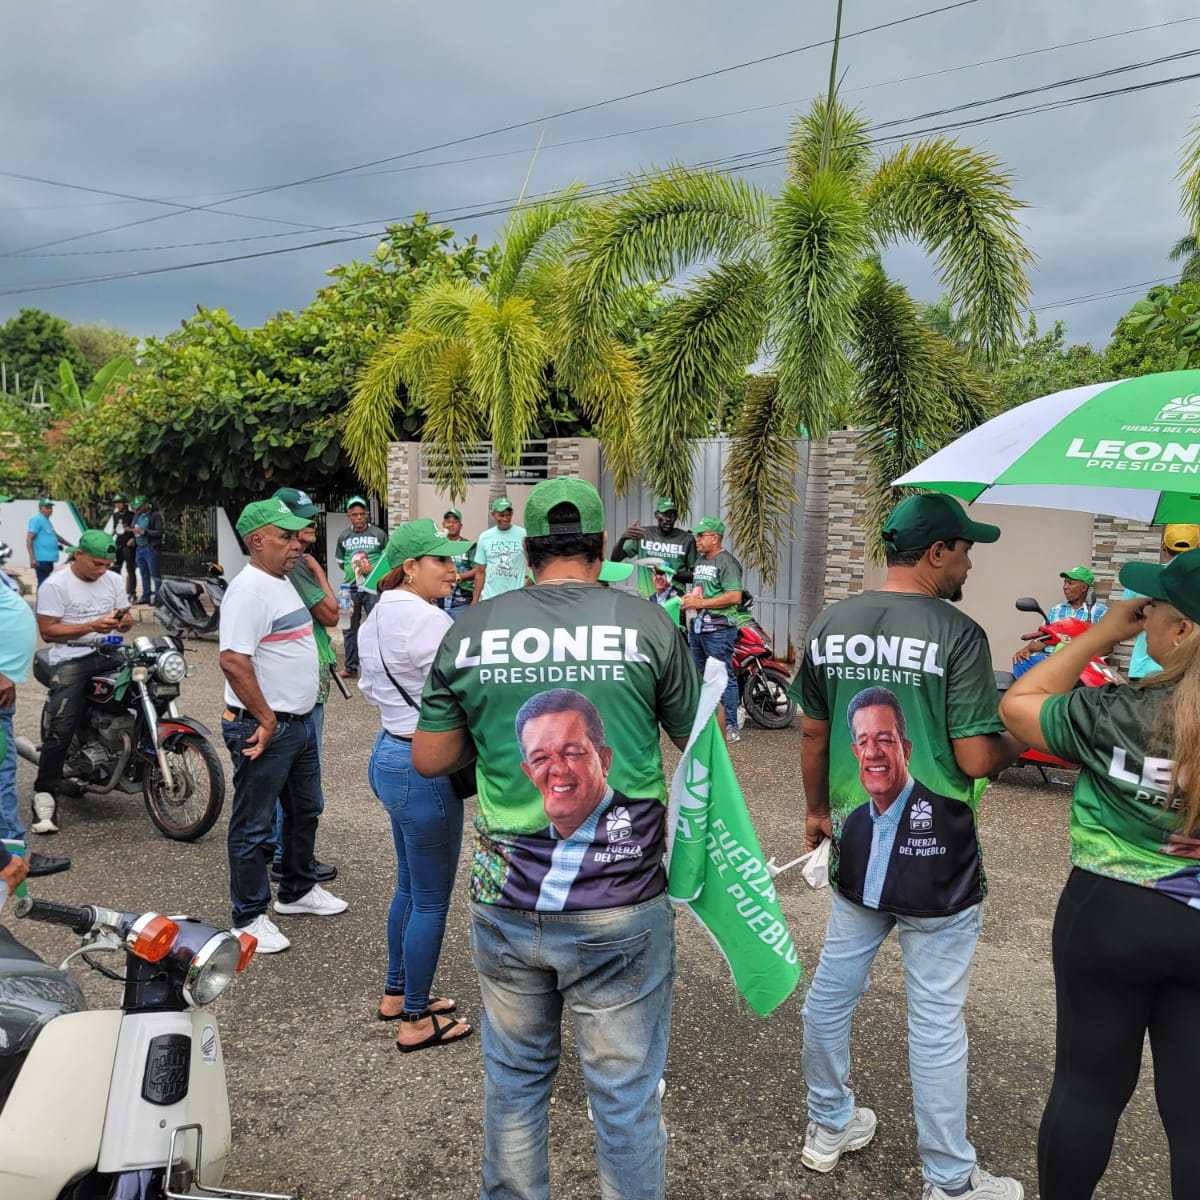 Movale suma fuerzas en respaldo a Leonel Fernández en el cibao –  (República Dominicana)